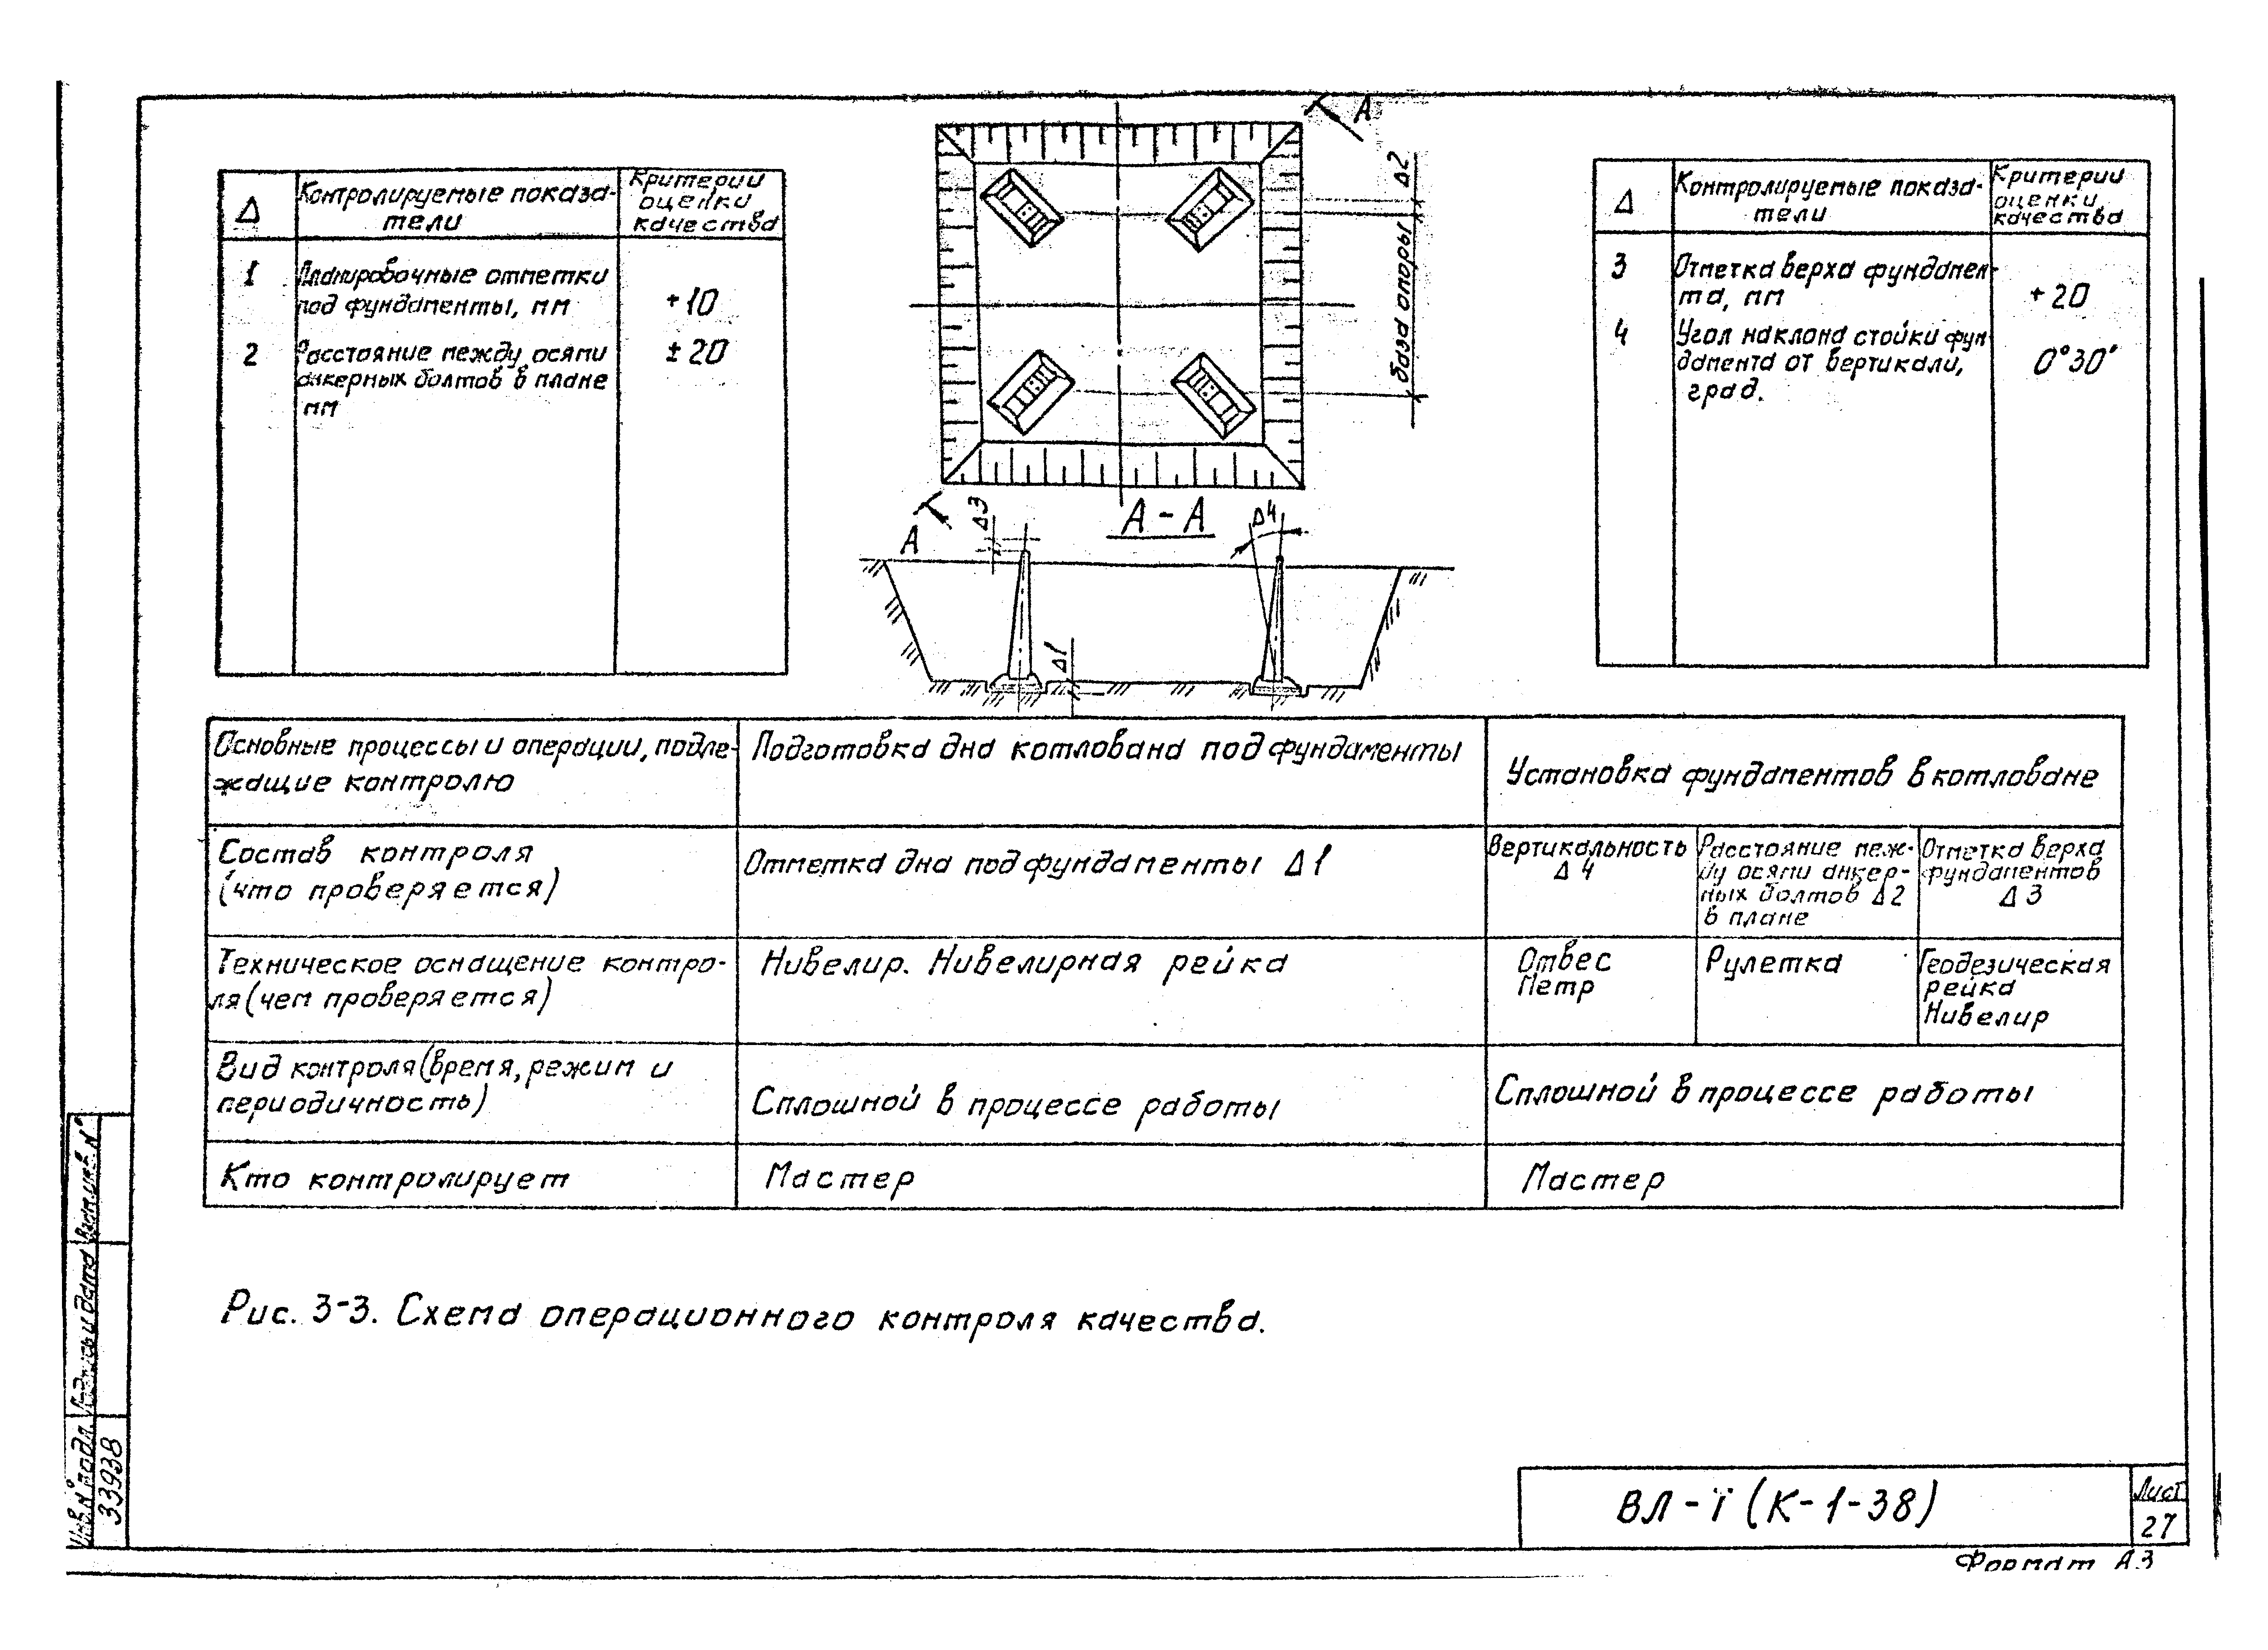 Технологическая карта К-1-38-3